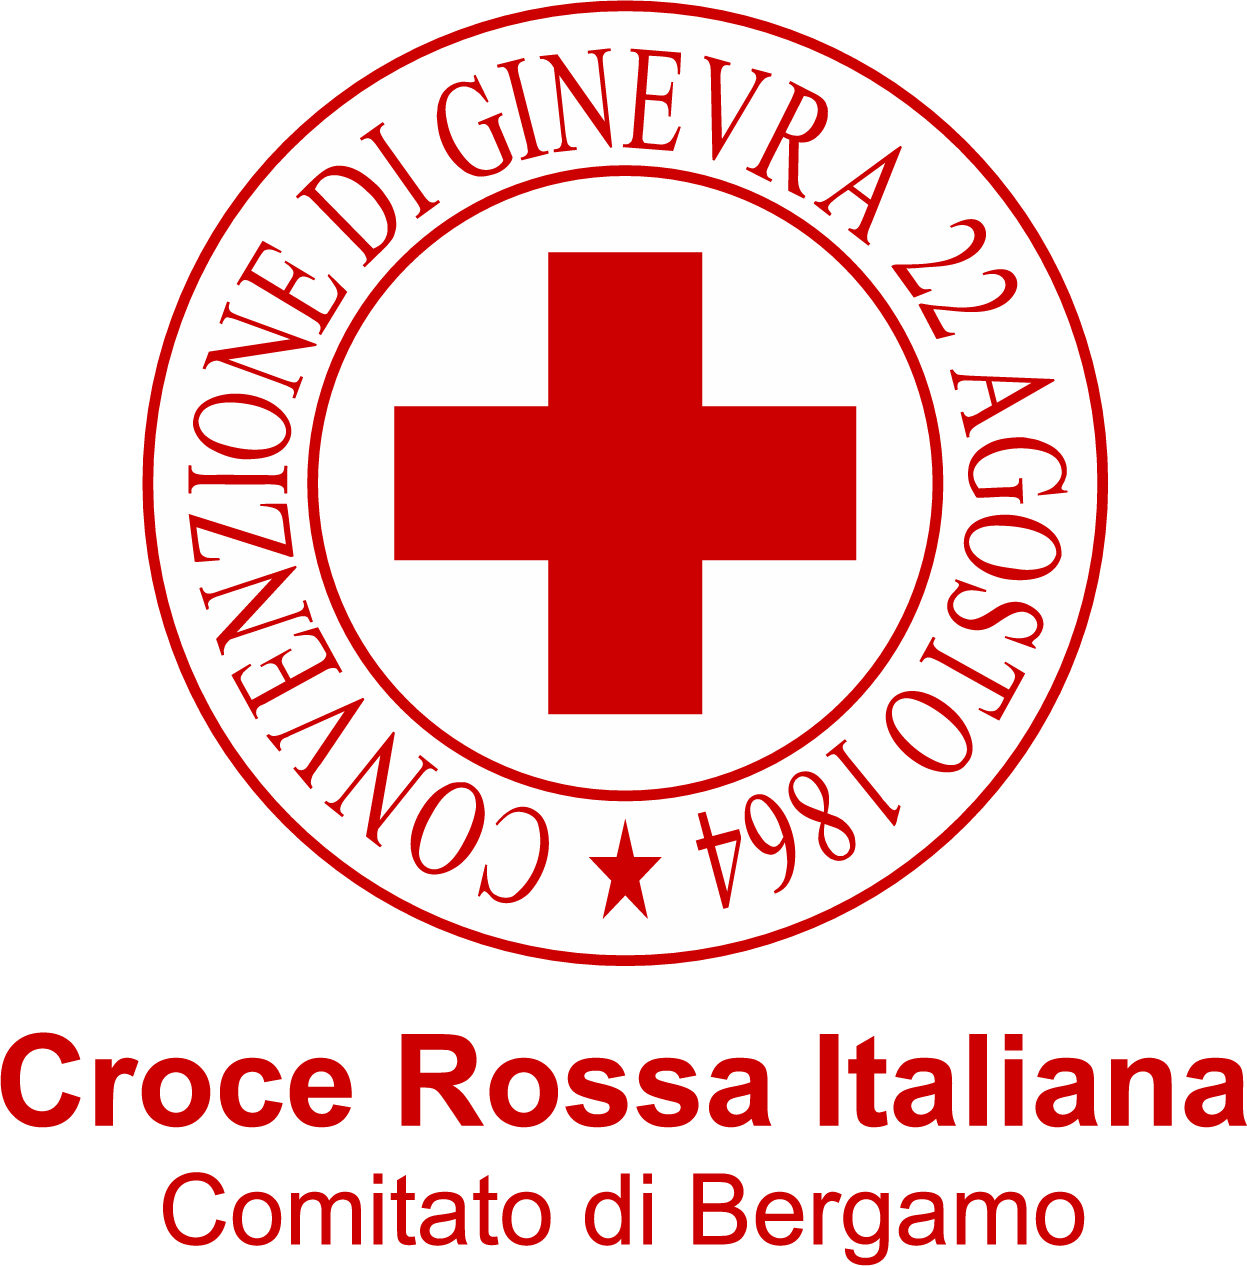 Croce Rossa Italiana - Comitato di Bergamo